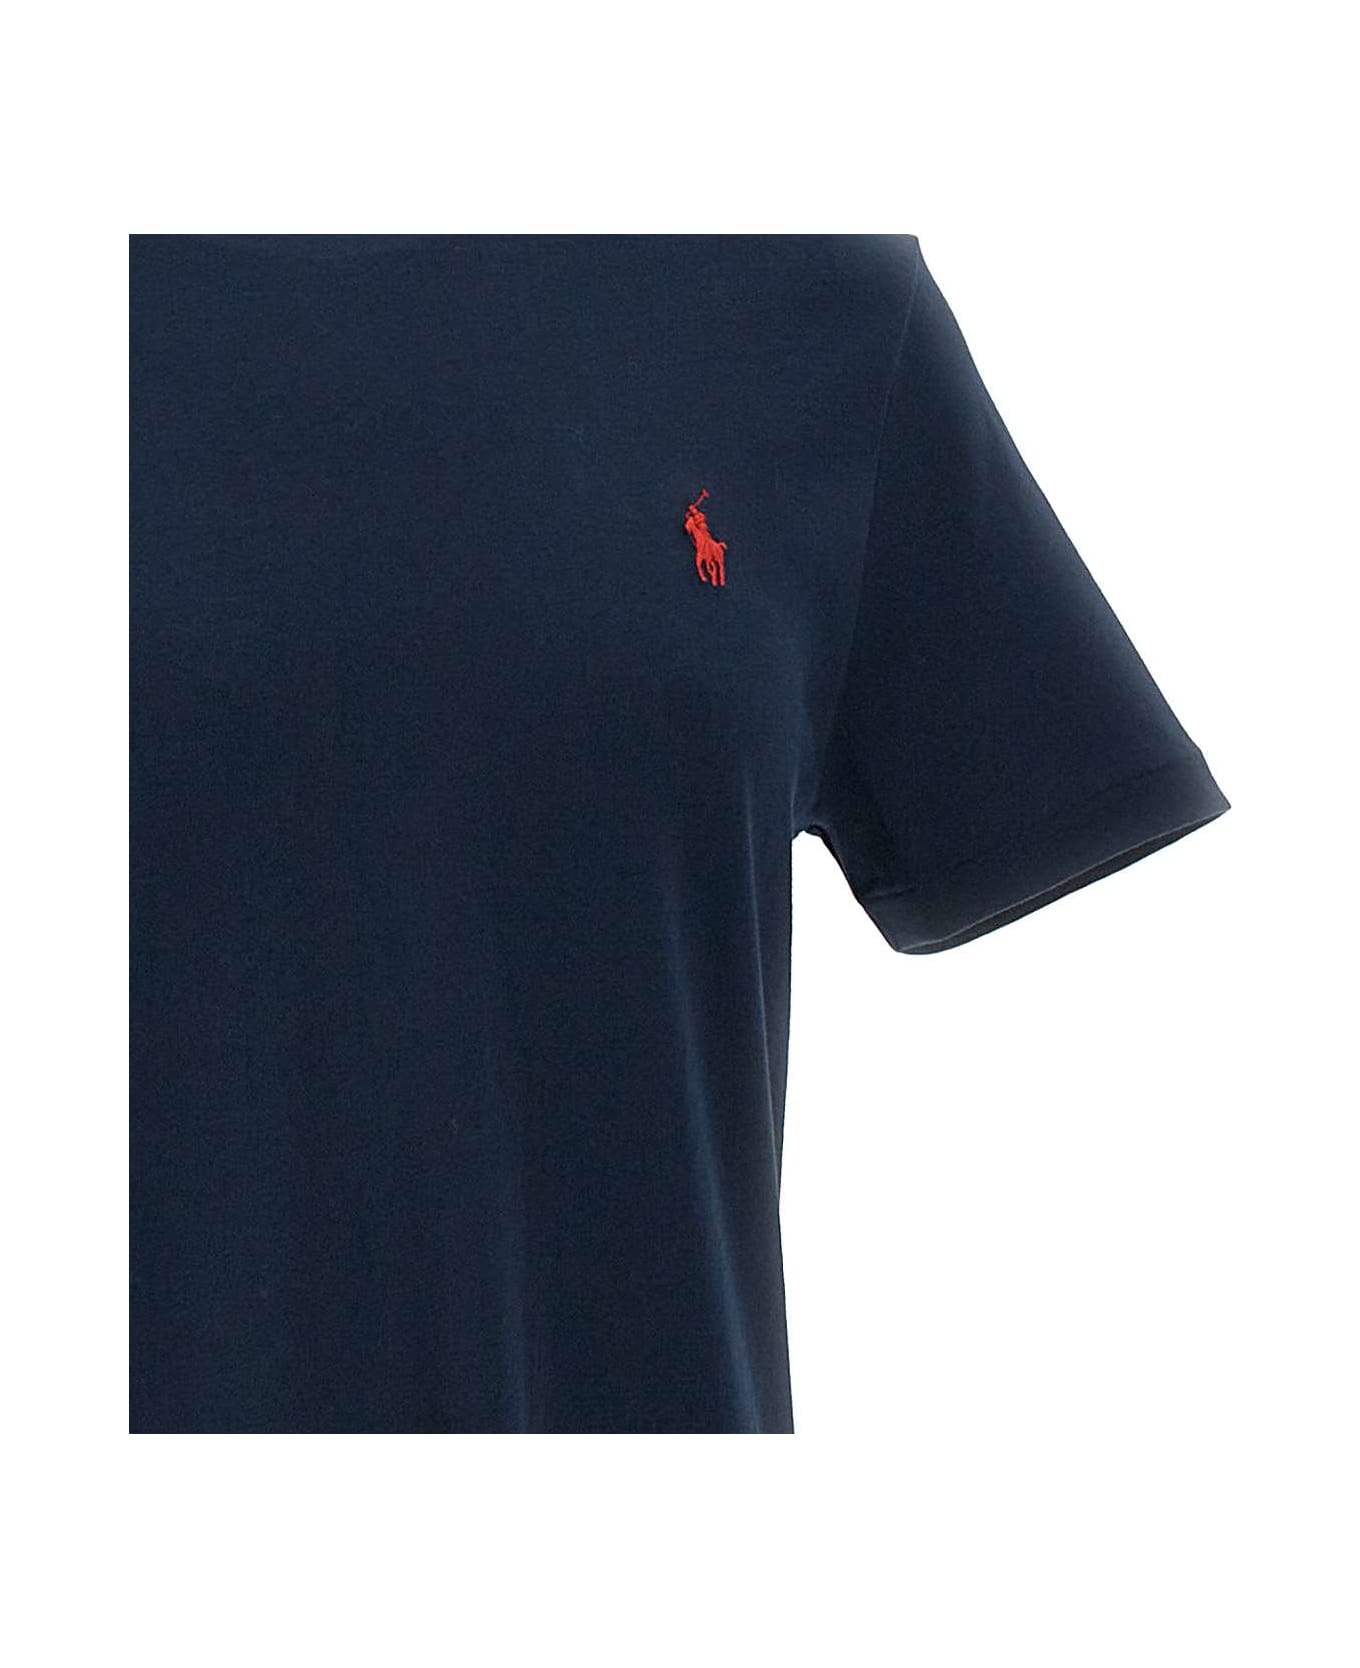 Polo Ralph Lauren Cotton T-shirt - BLUE